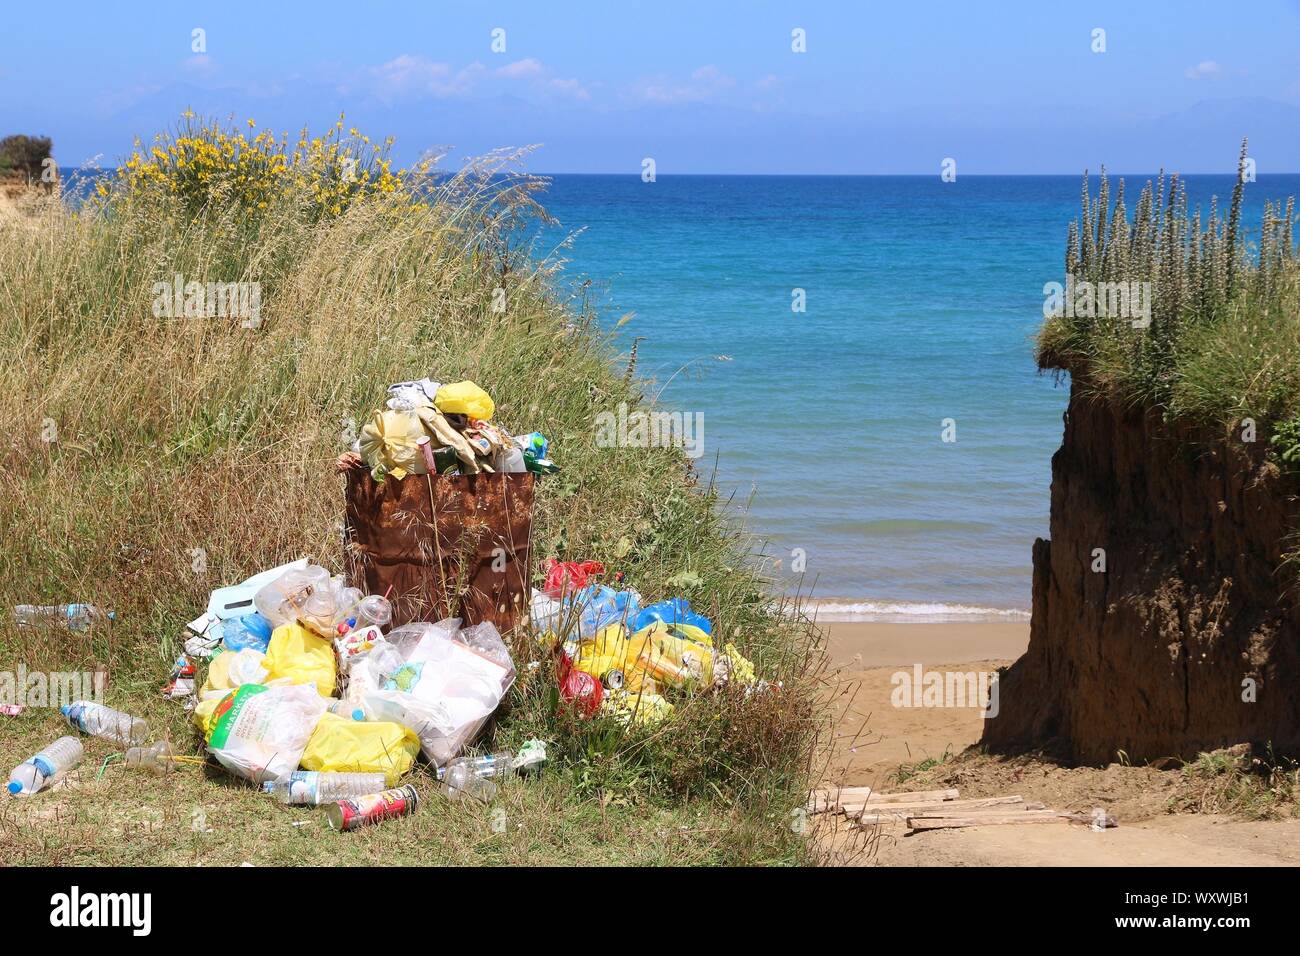 CORFU, GREECE - MAY 31, 2016: Waste disposal next to the beach in Sidari, Corfu Island, Greece. 558,000 tourists visited Corfu in 2012. Stock Photo